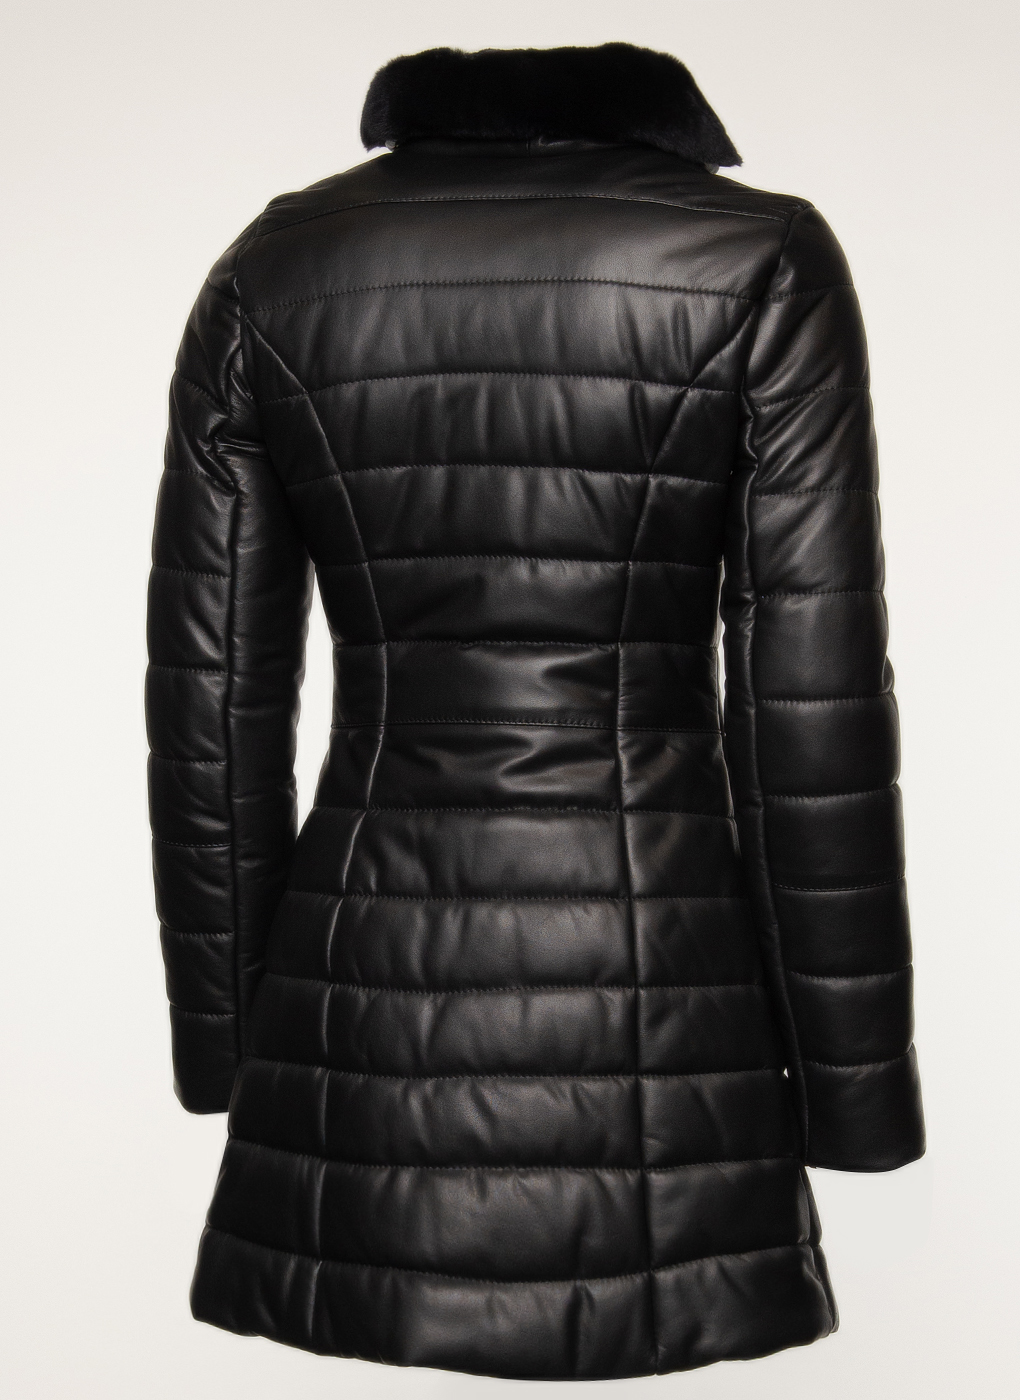 Кожаная куртка женская Imperiafabrik 1633772 черная 46 RU